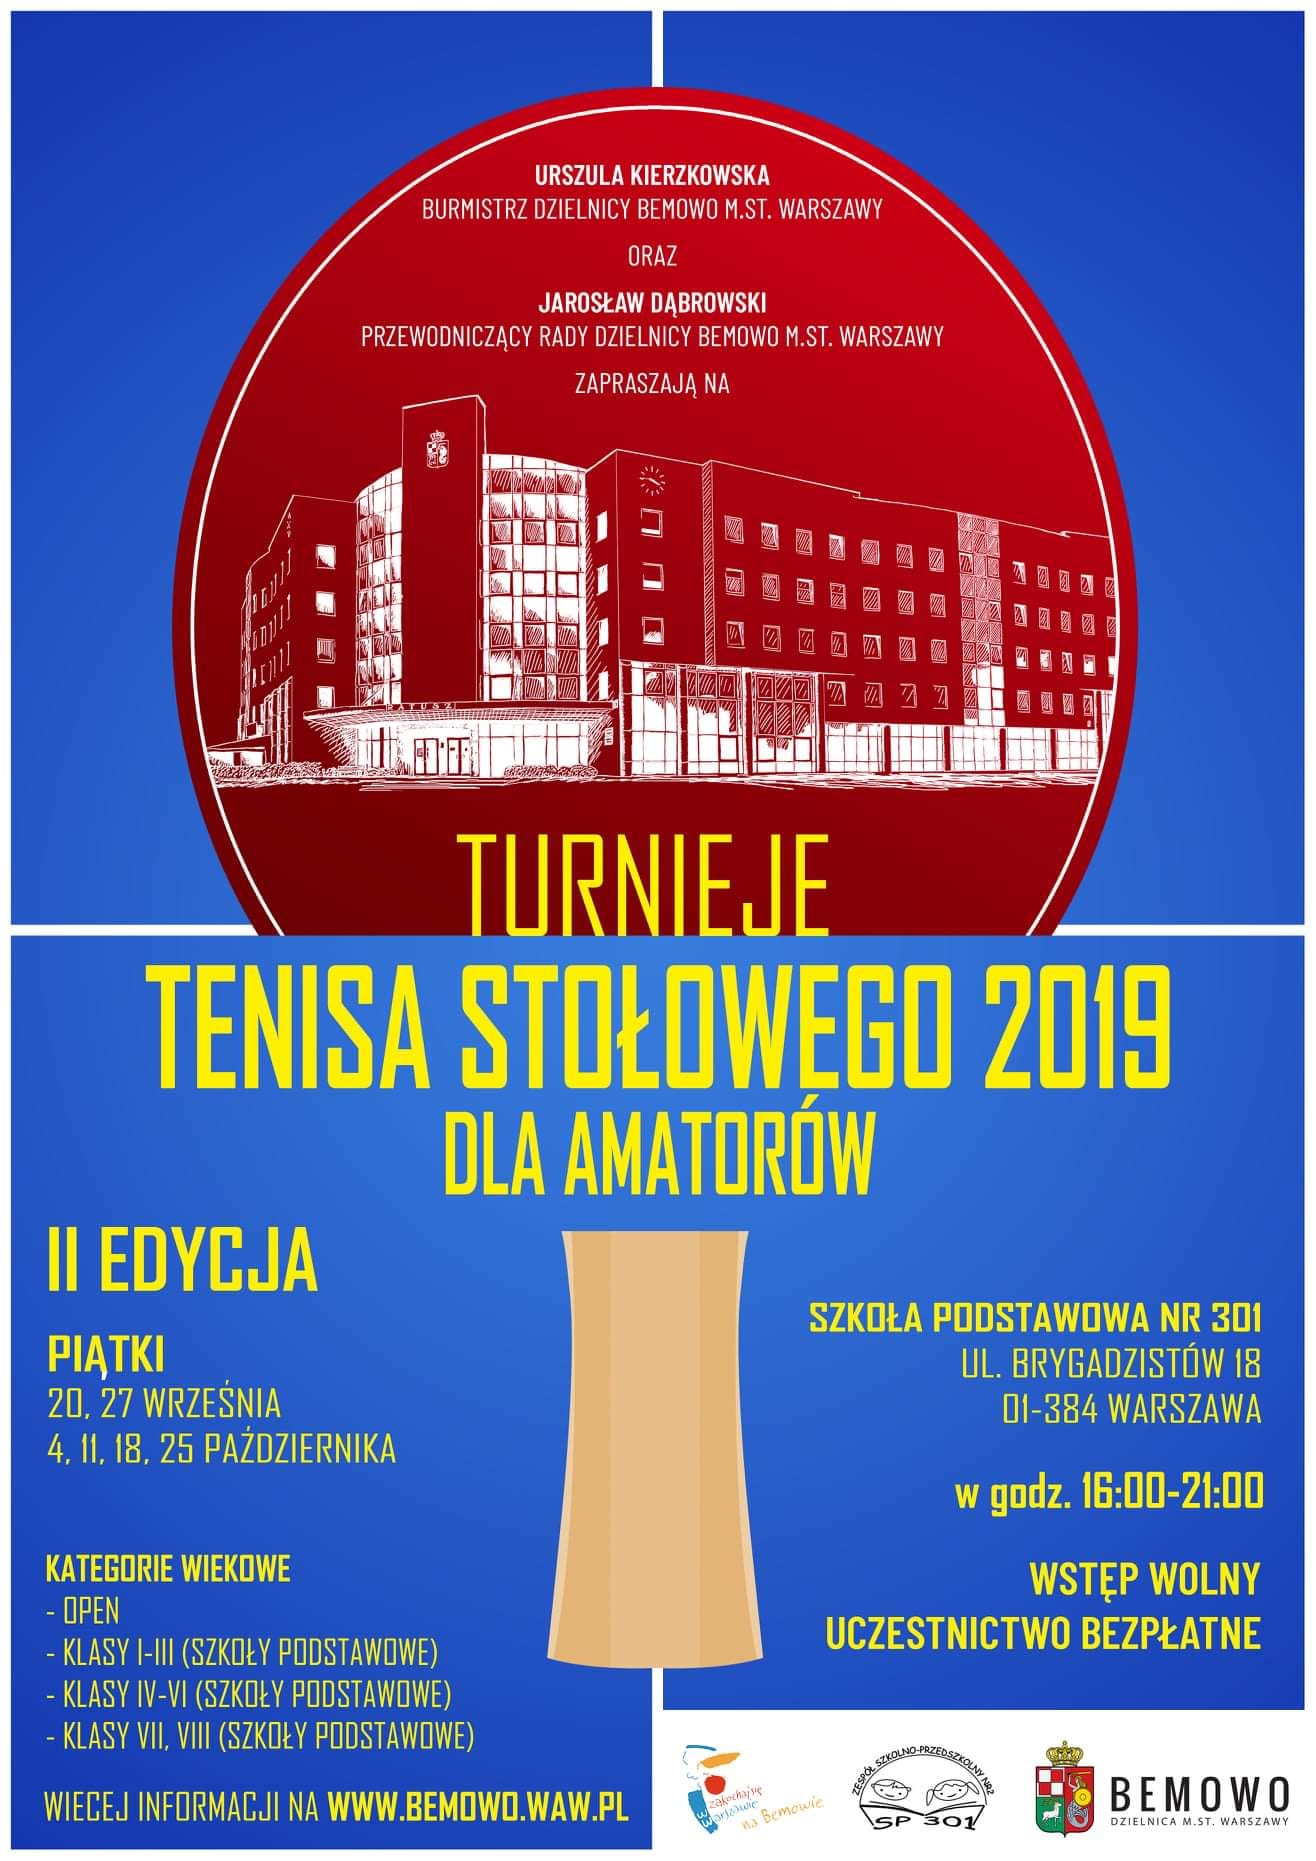 Plakat turnieju Turnieje tenisa stołowego Bemowo - Brygadzistów (18 października 2019) - II EDYCJA